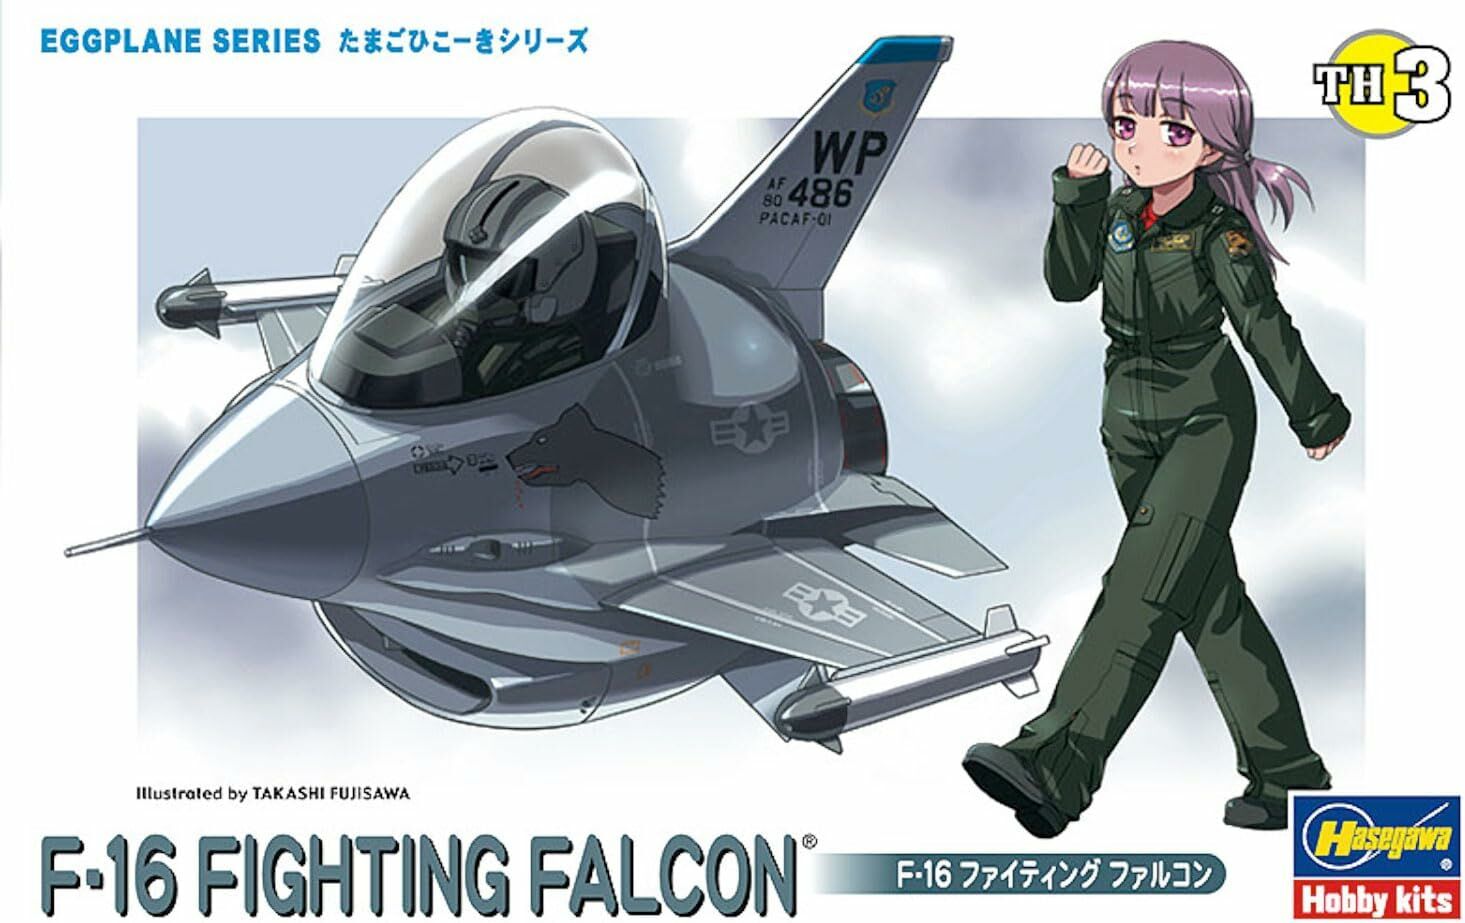 Egg Plane F-16 Fighting Falcon